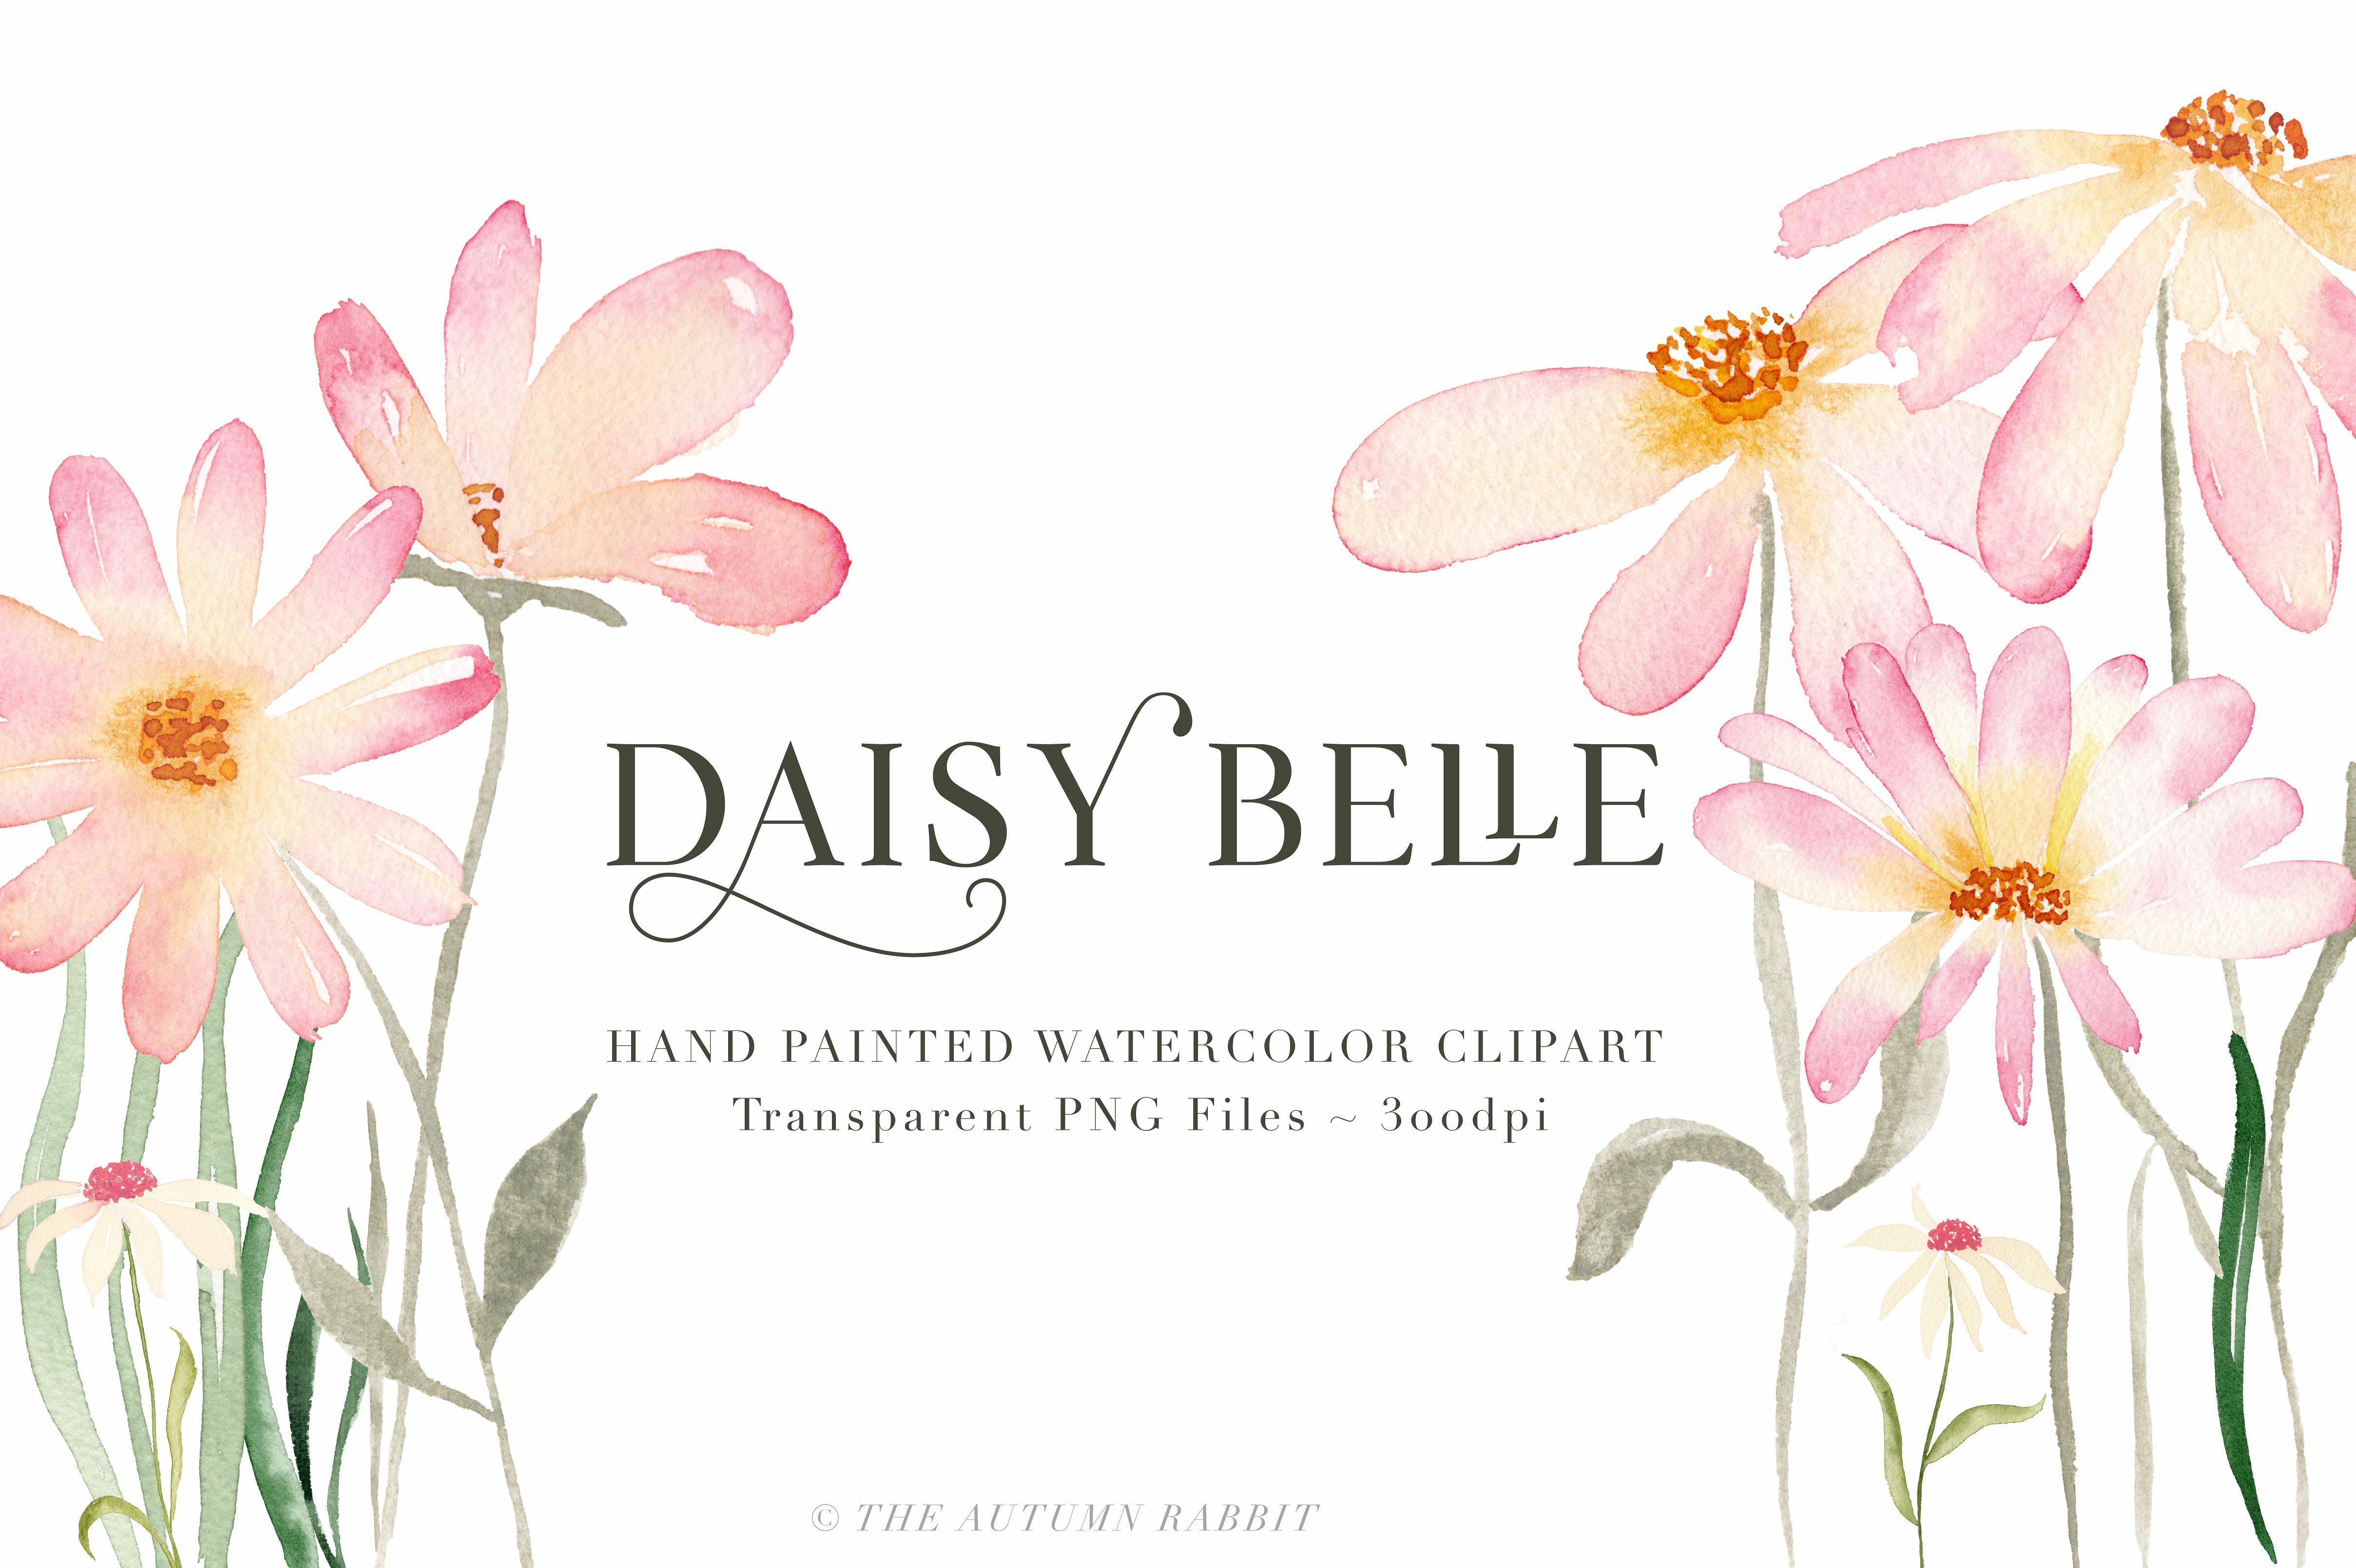 手绘水彩花卉元素素材Daisy Belle - Waterc